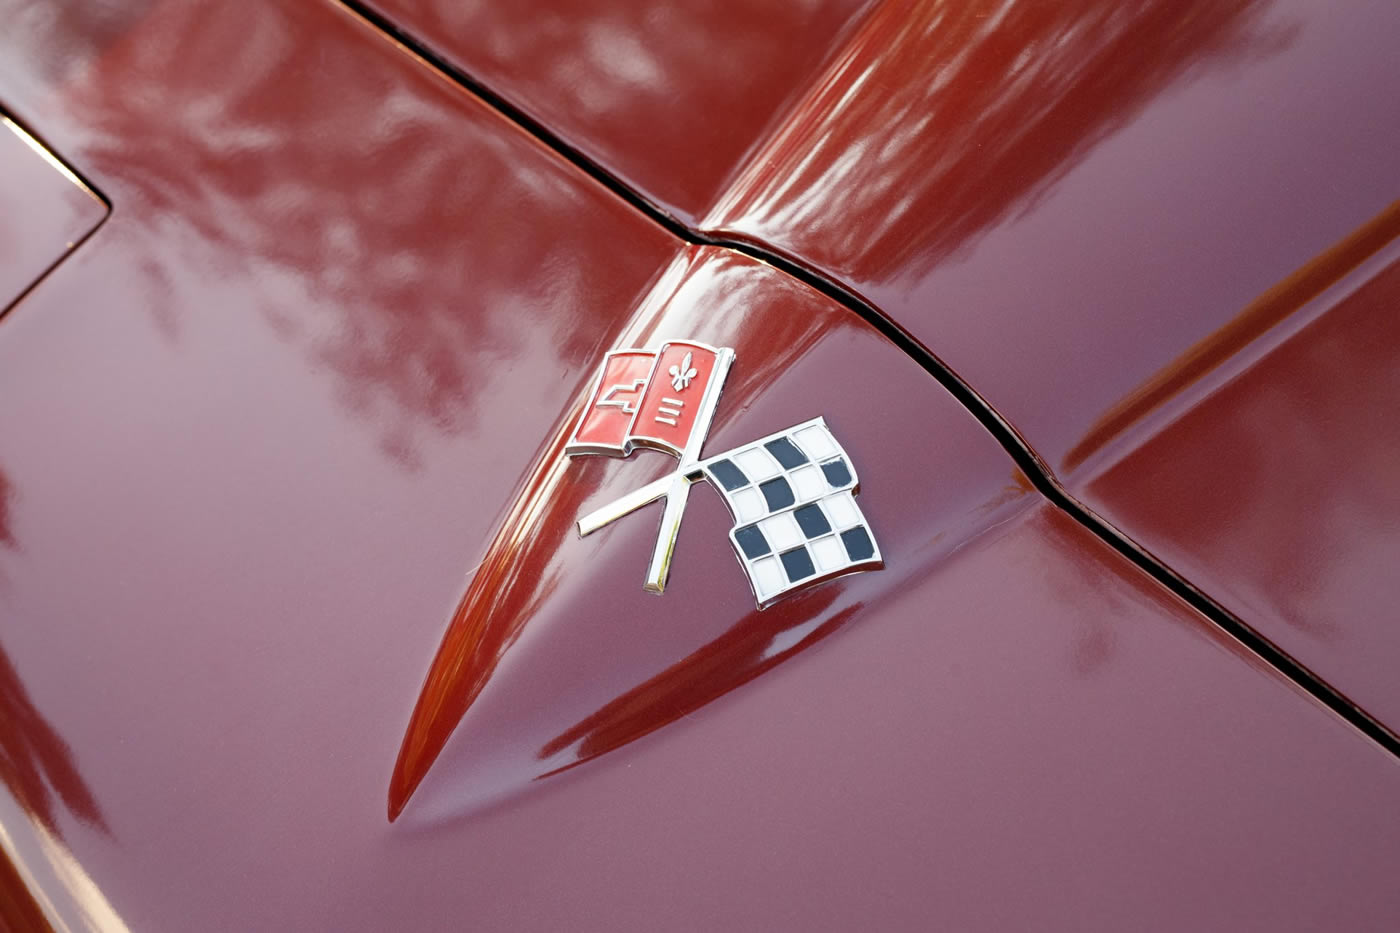 1966 Corvette Coupe in Milano Maroon